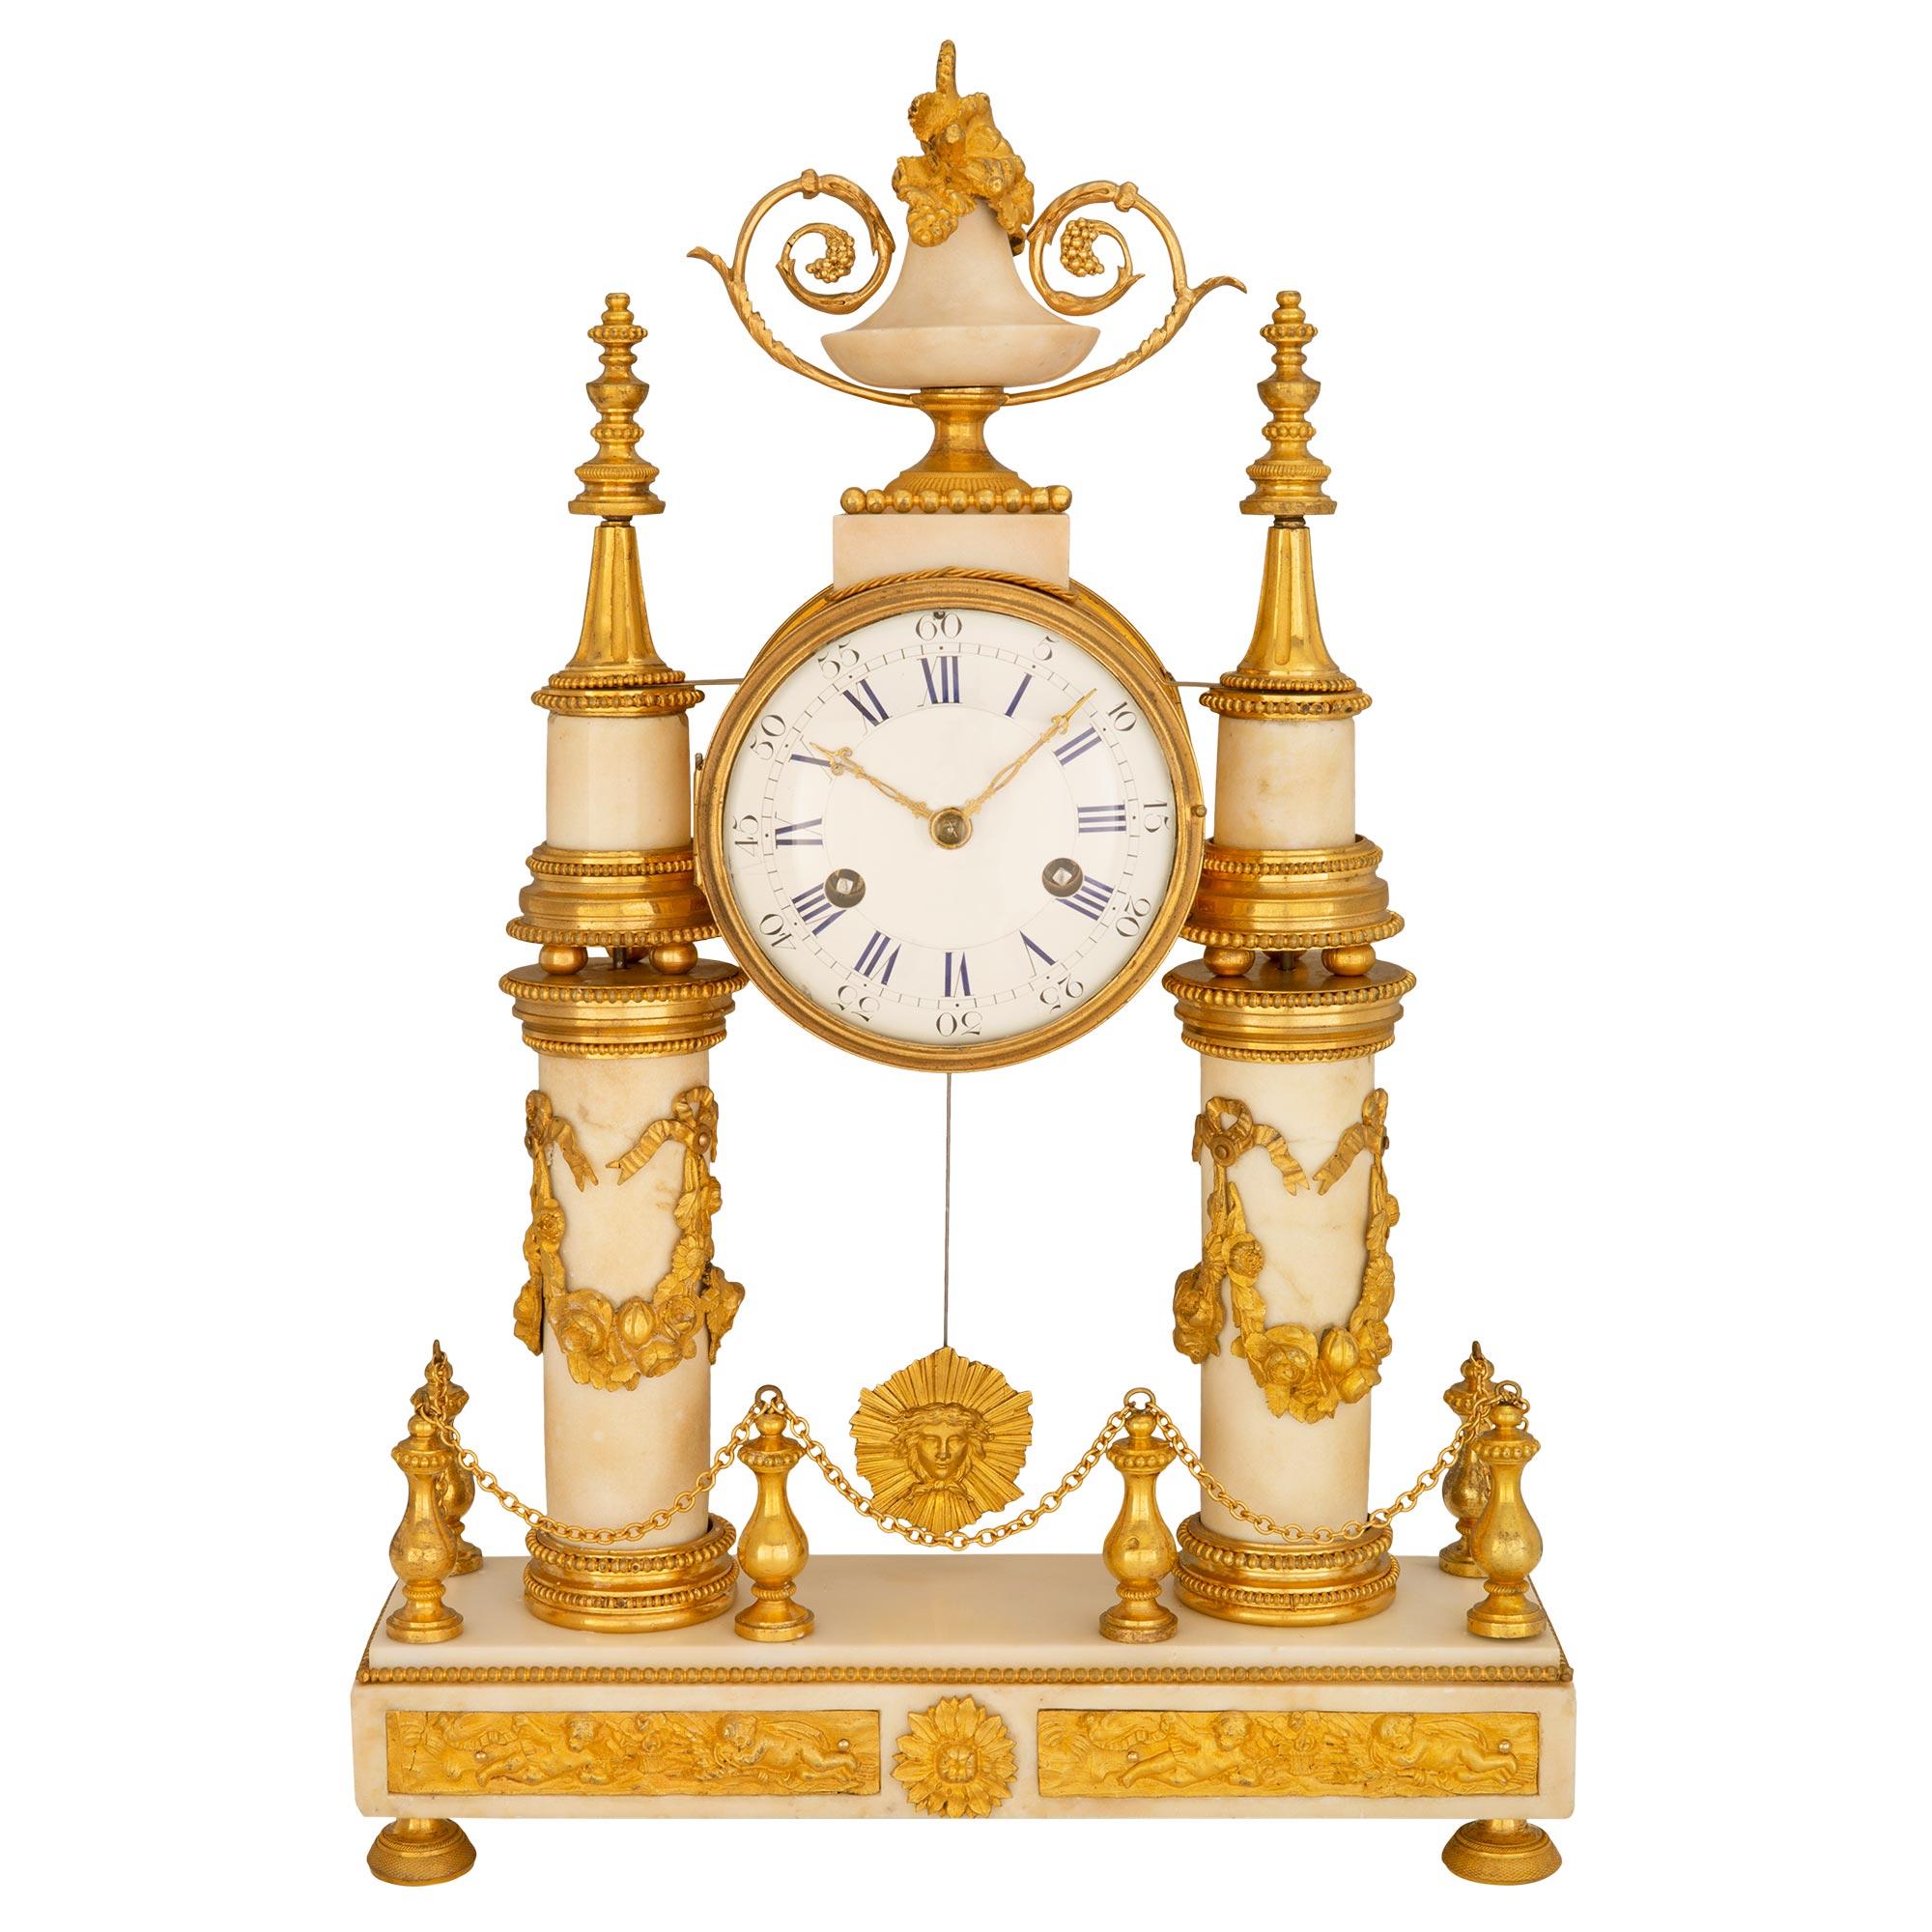 Une exquise horloge française du début du 19ème siècle, de style Louis XVI, montée sur du marbre blanc de Carrare et du bronze doré. Montée sur des supports en bronze doré, la base rectangulaire en marbre avec une garniture perlée et des plaques de